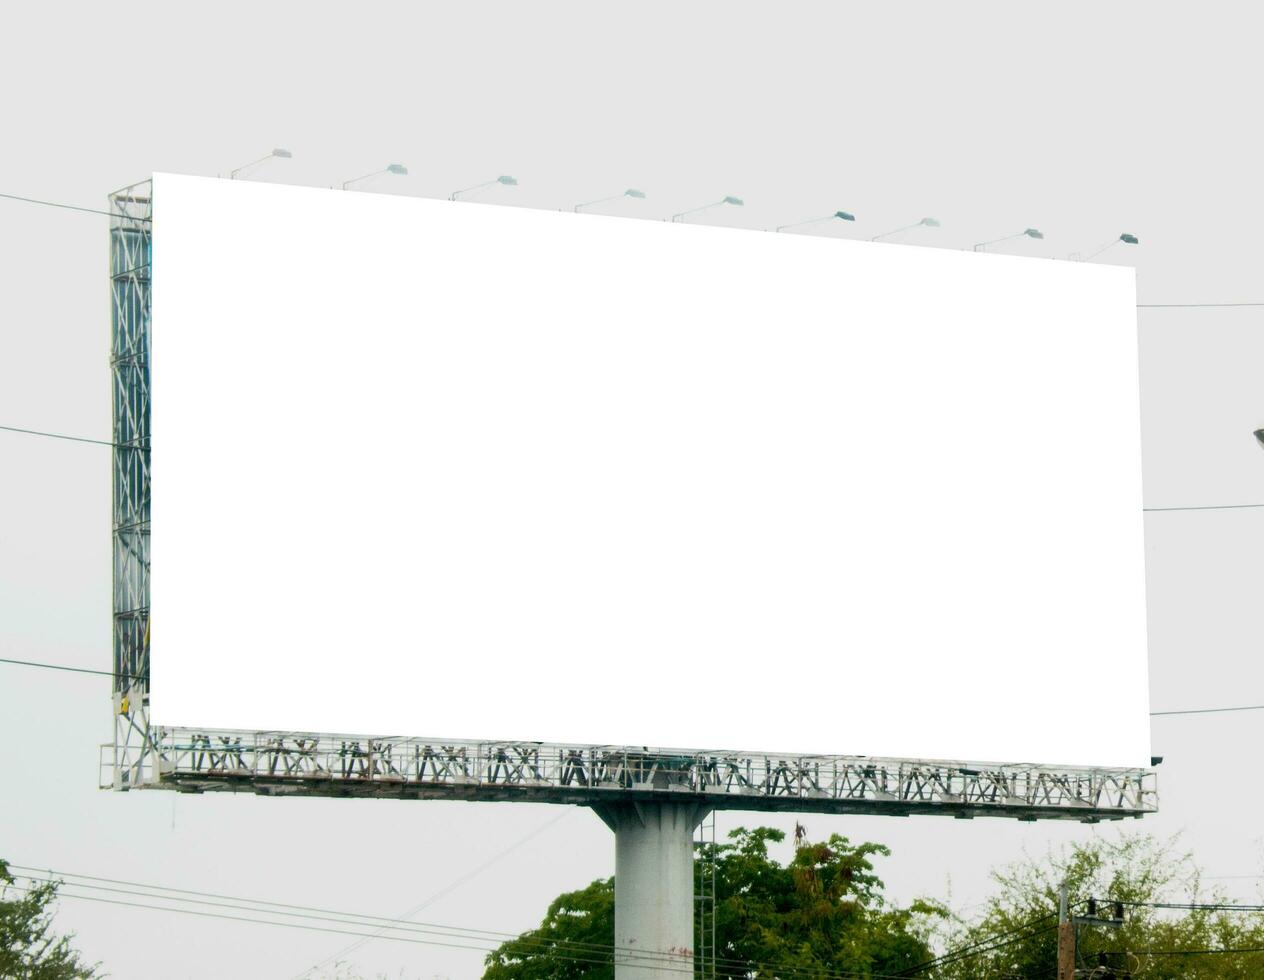 Plakatwand leer zum draussen Werbung Poster beim Blau Himmel. foto